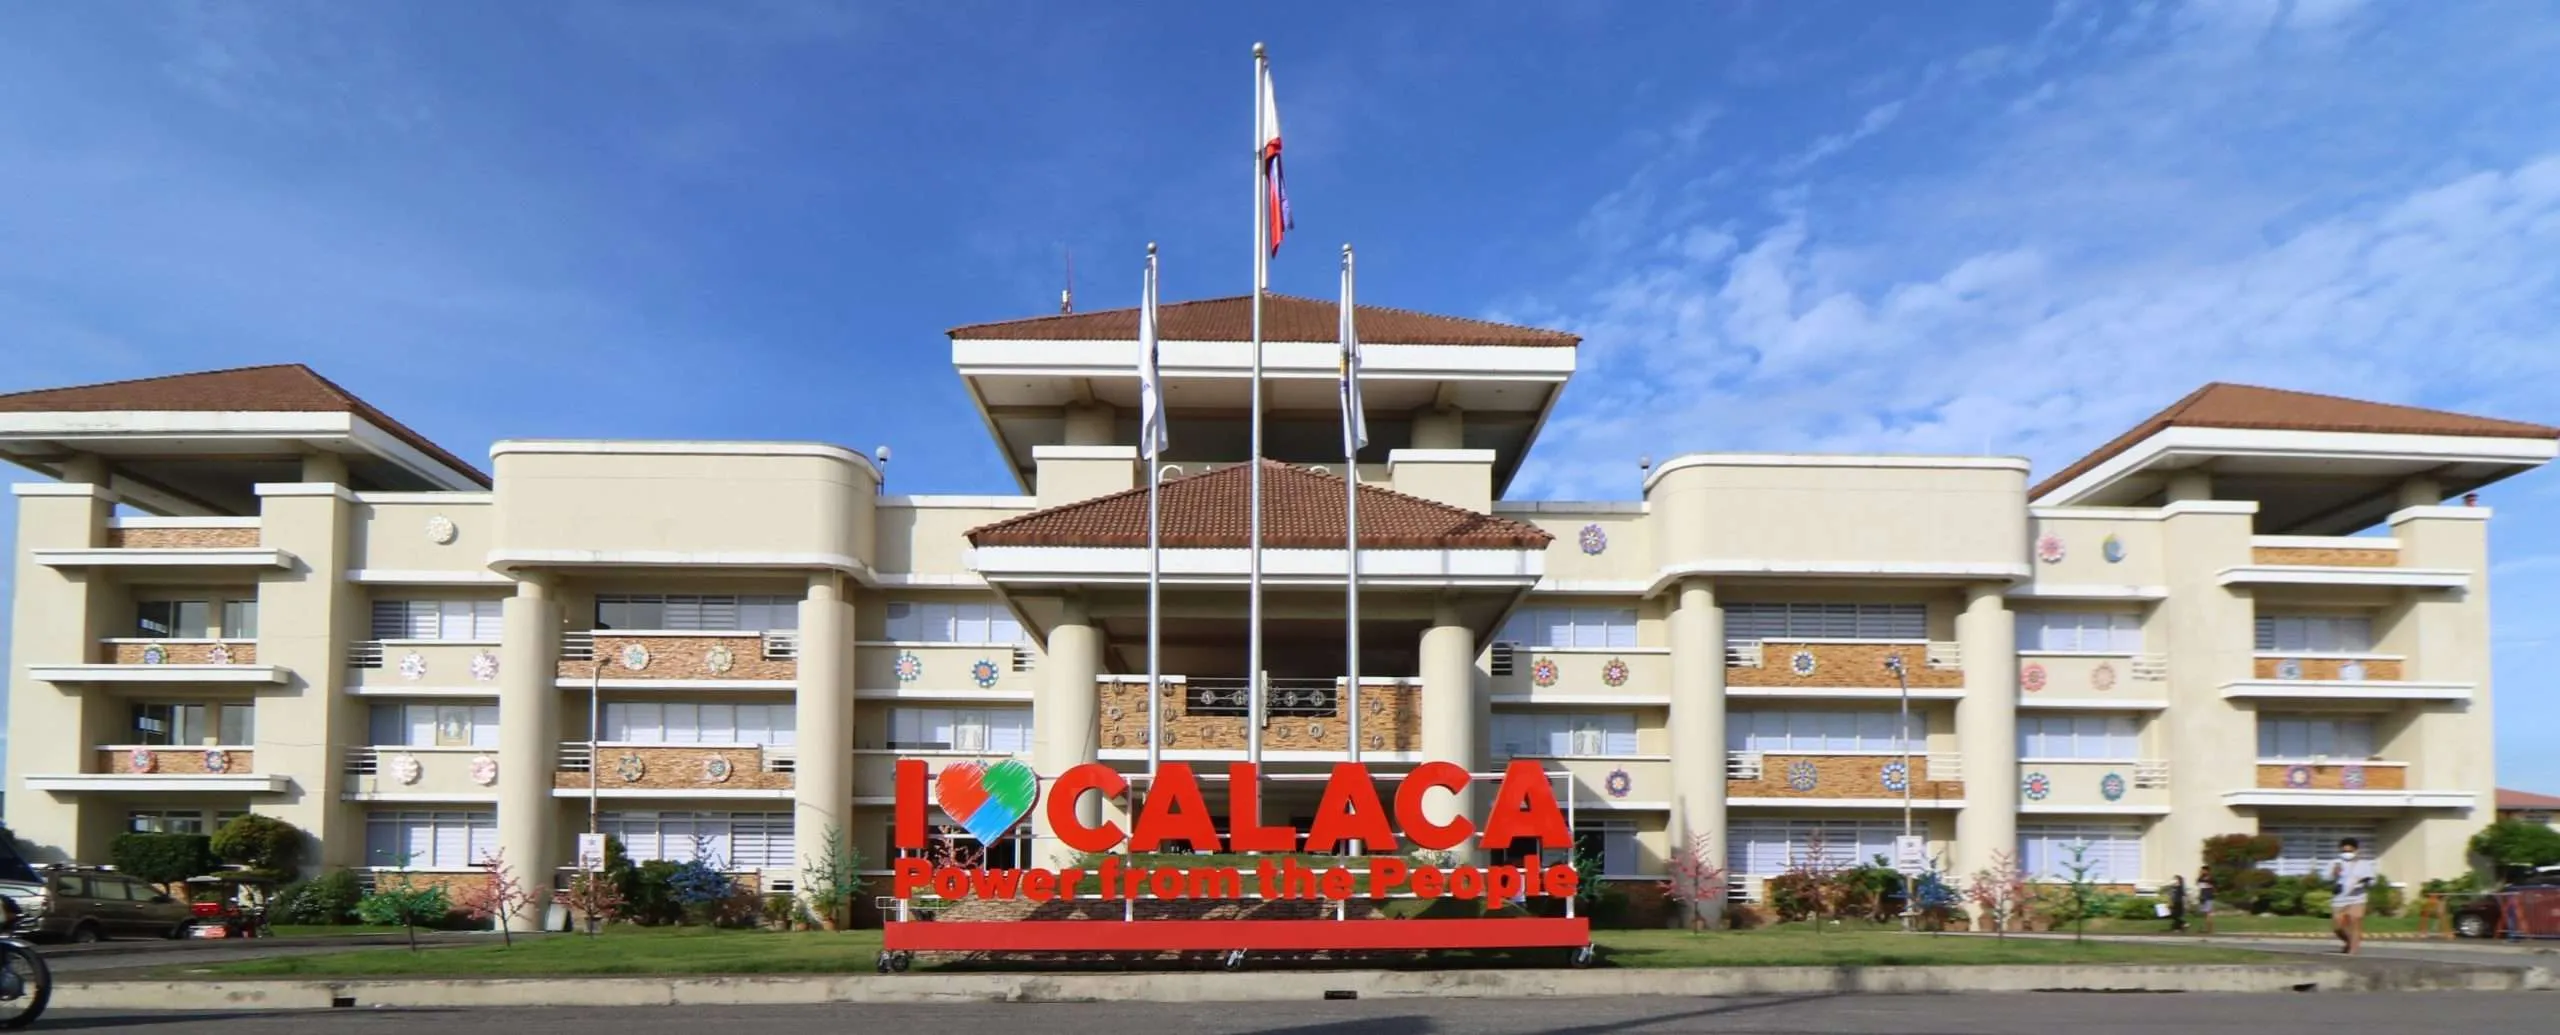 Calaca City Municipal